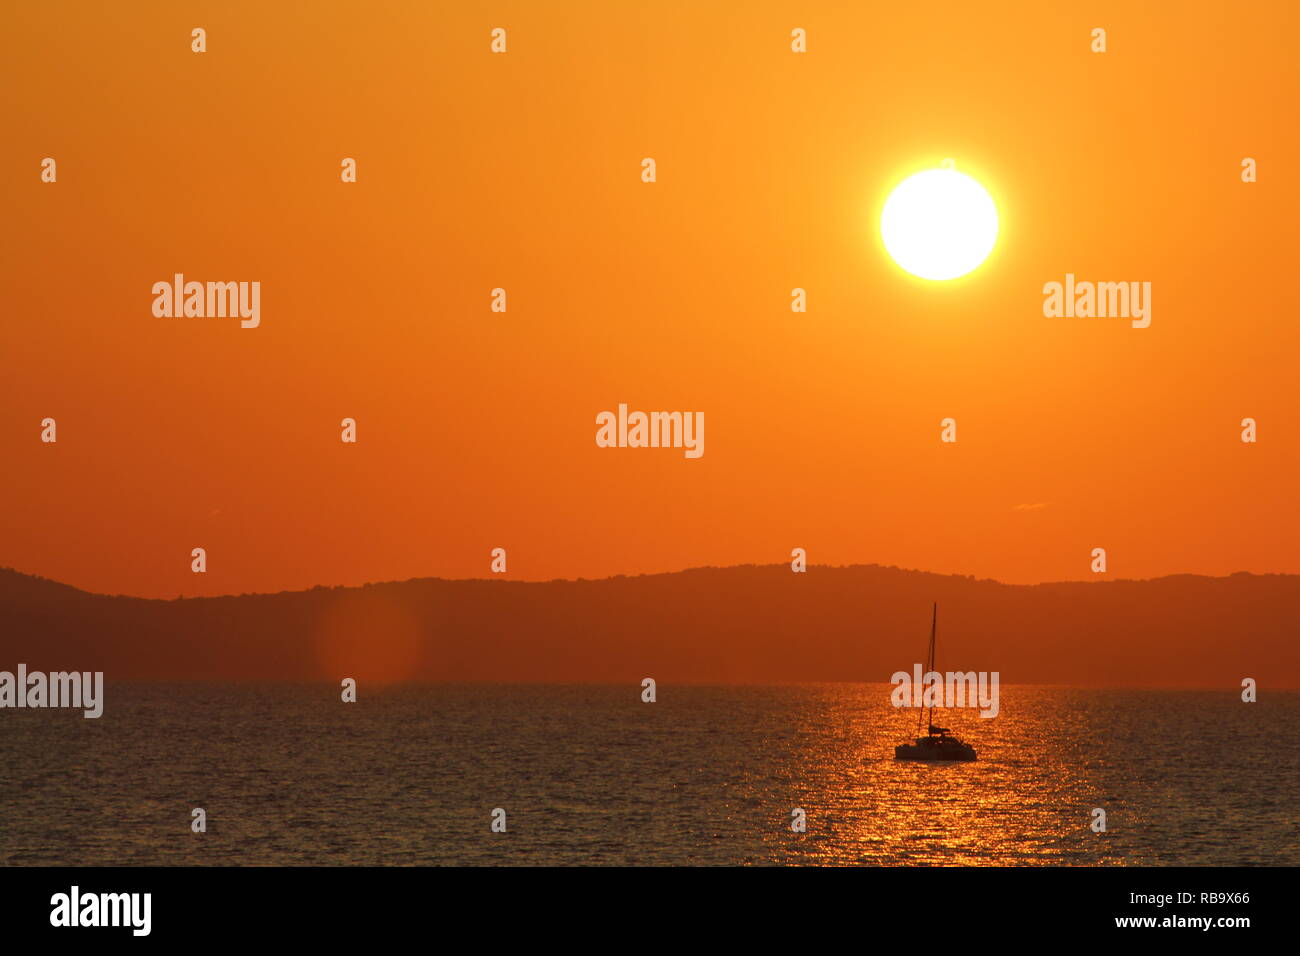 Incroyable Coucher du Soleil entre Split et de Brac en Croatie. Soleil se couche dans la mer Adriatique, sur un voilier, très belle vue. Banque D'Images